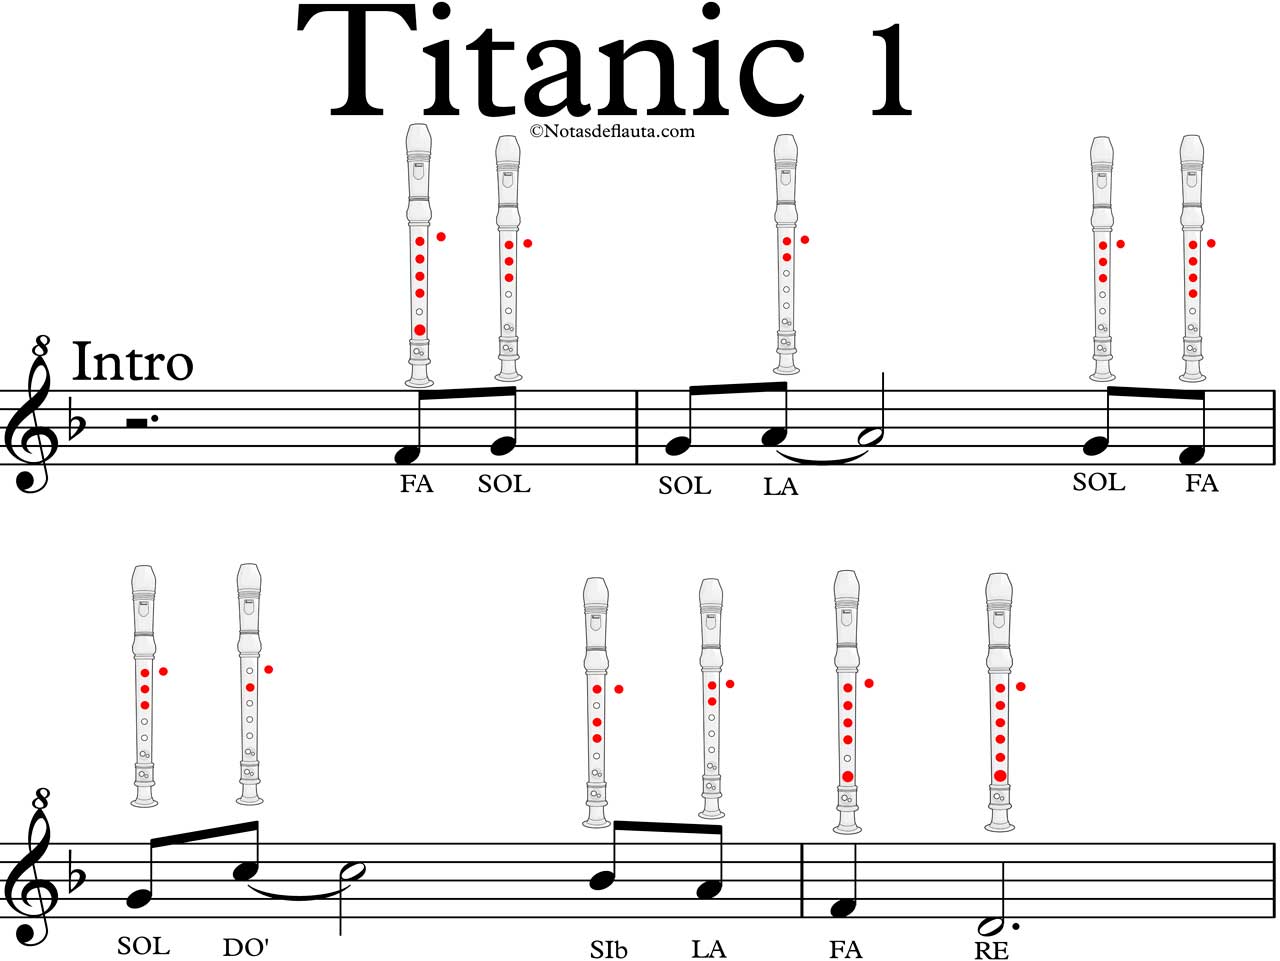 Titanic En Flauta Notas De Flauta Quieres Tocarla Improviso livre para flauta doce, radio e balde d'agua. titanic en flauta notas de flauta